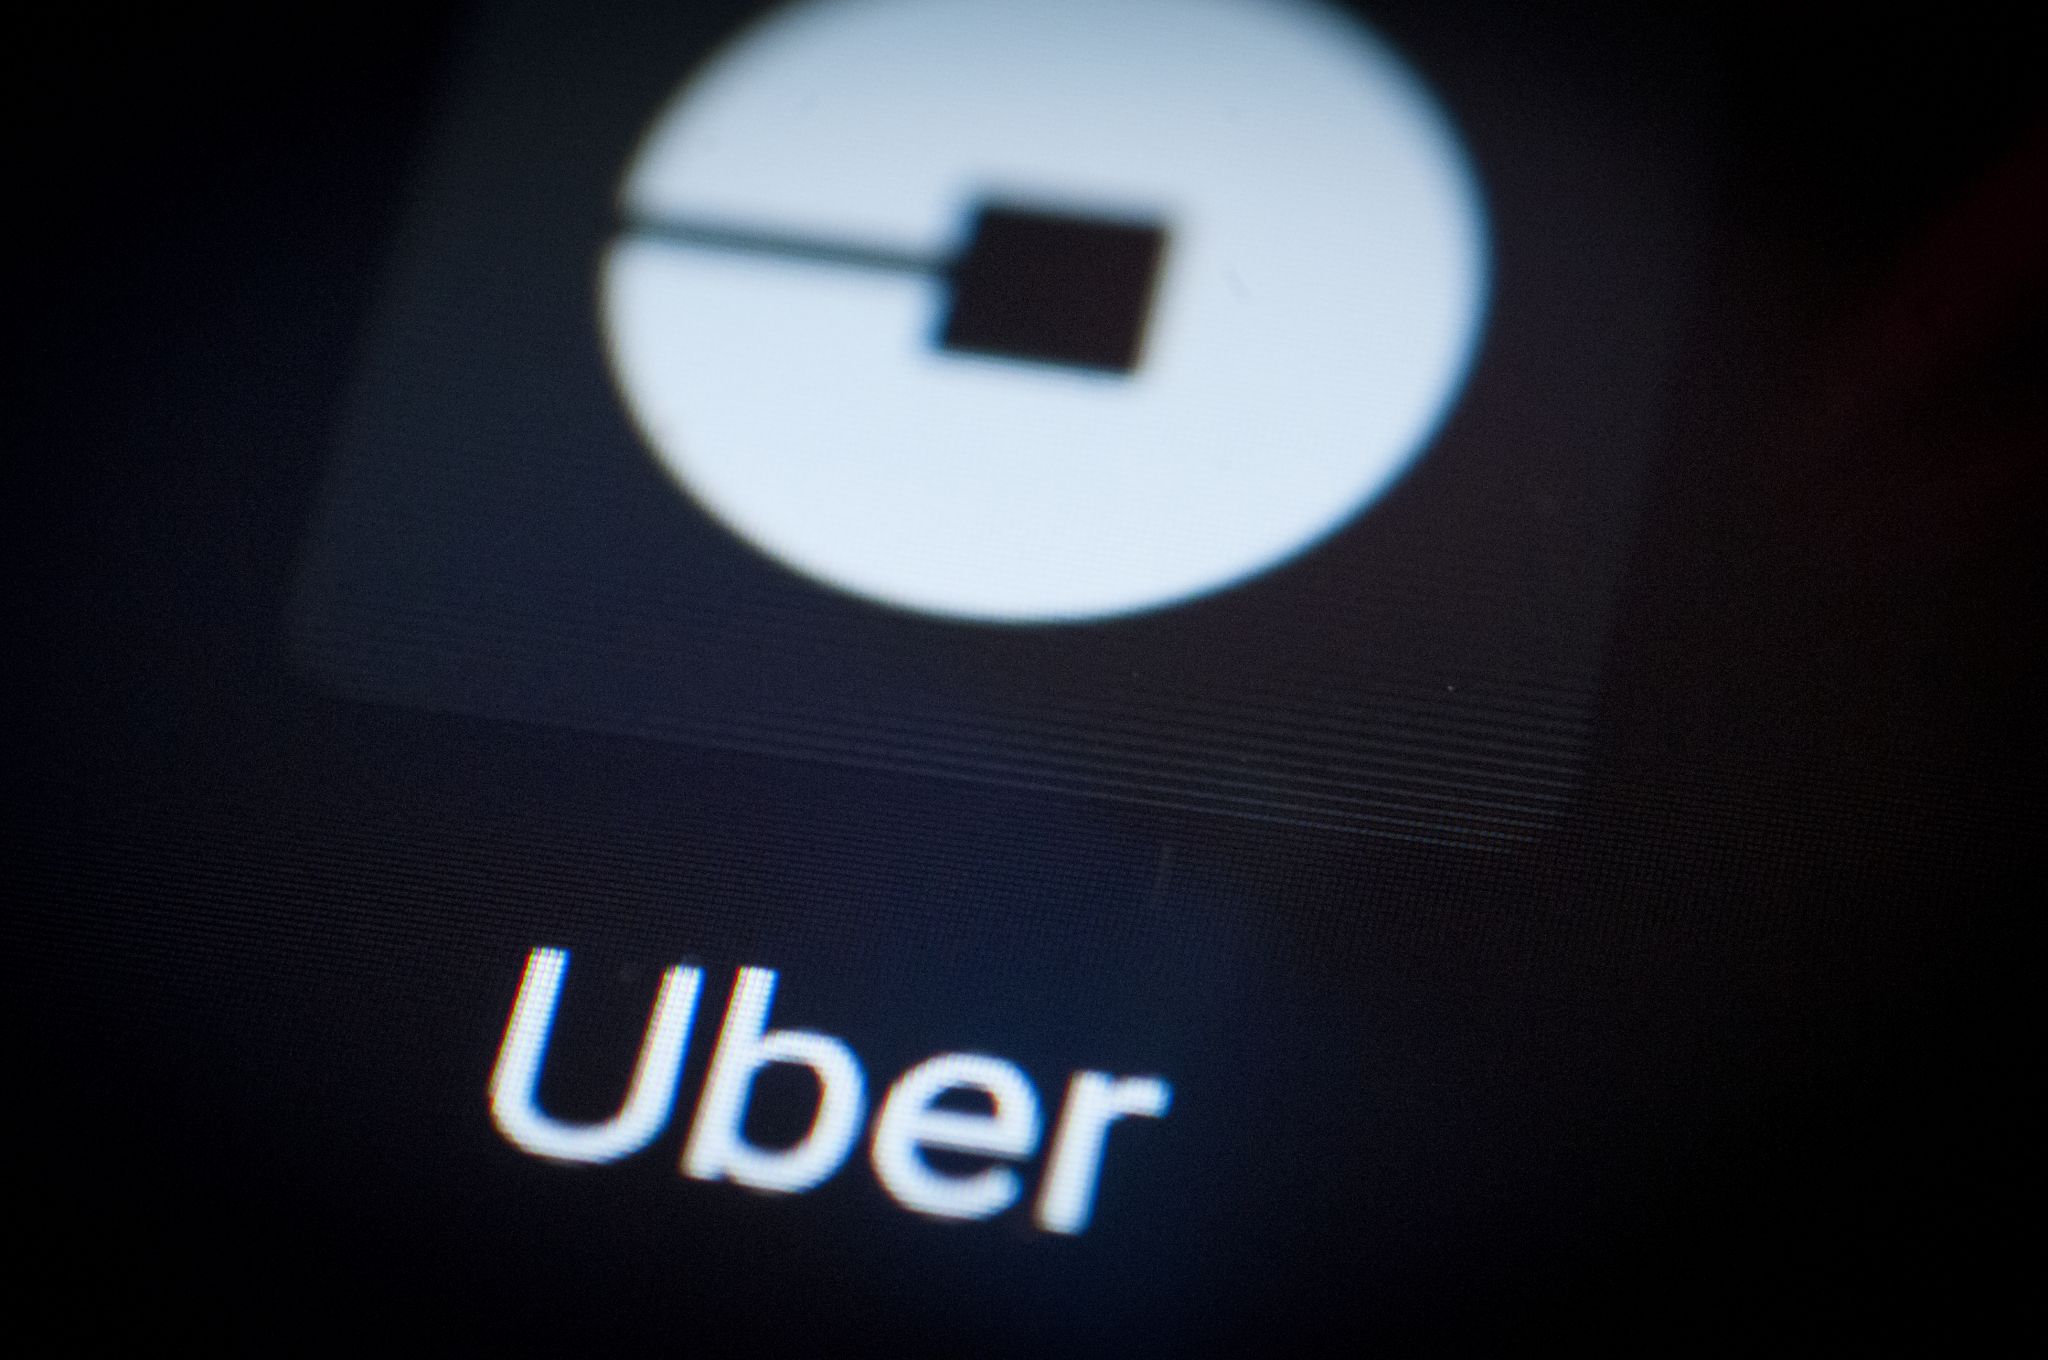 Uber agregará recargos temporales en viajes y entregas de alimentos debido al aumento del costo de la gasolina